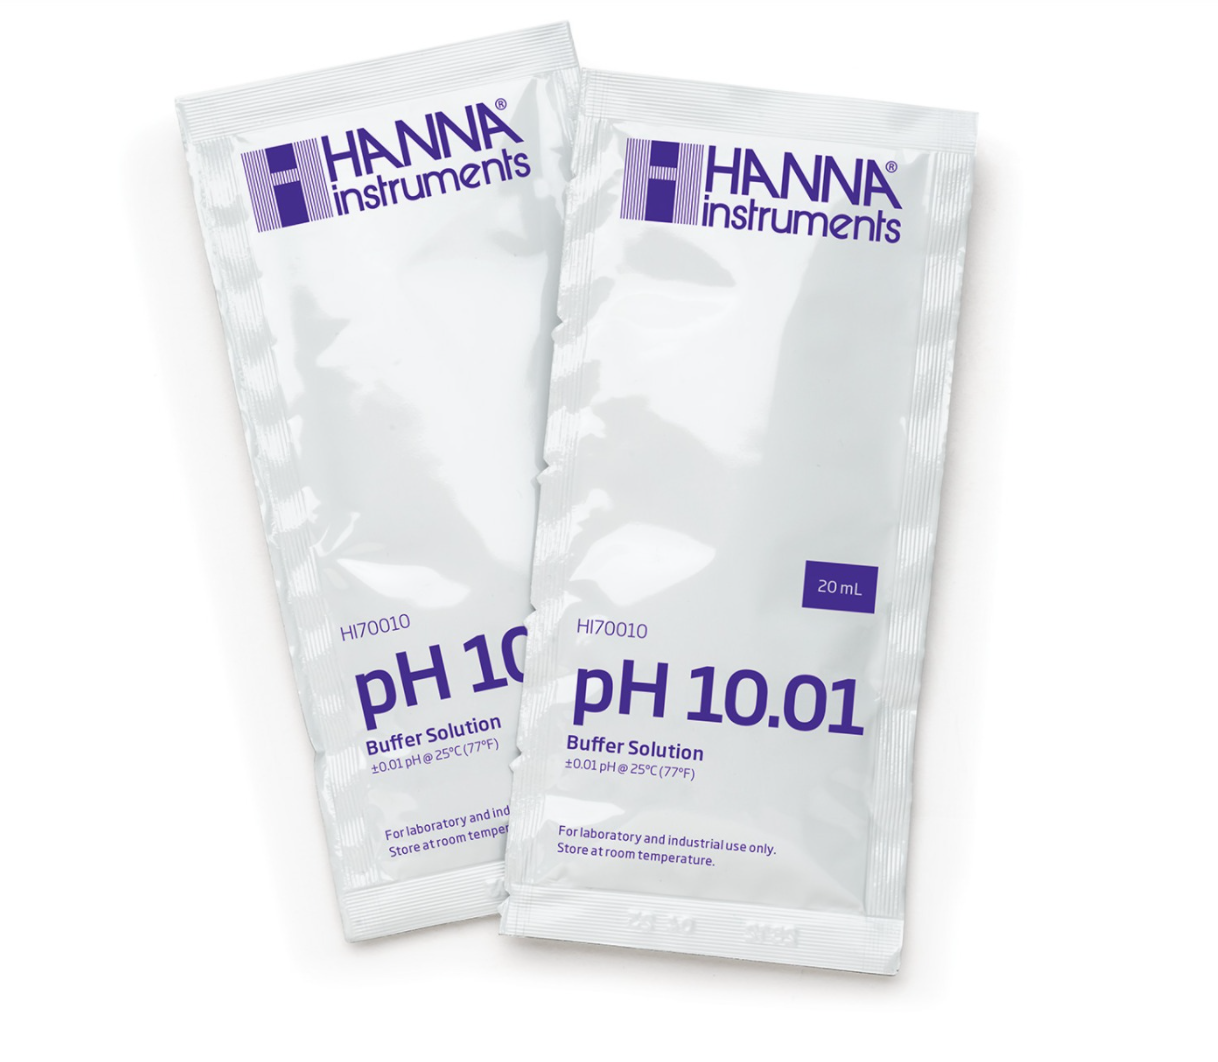 10.01 pH Calibration Single Use Packet Bulk Box (25 x 20mL sachets) (HI70010P-B)